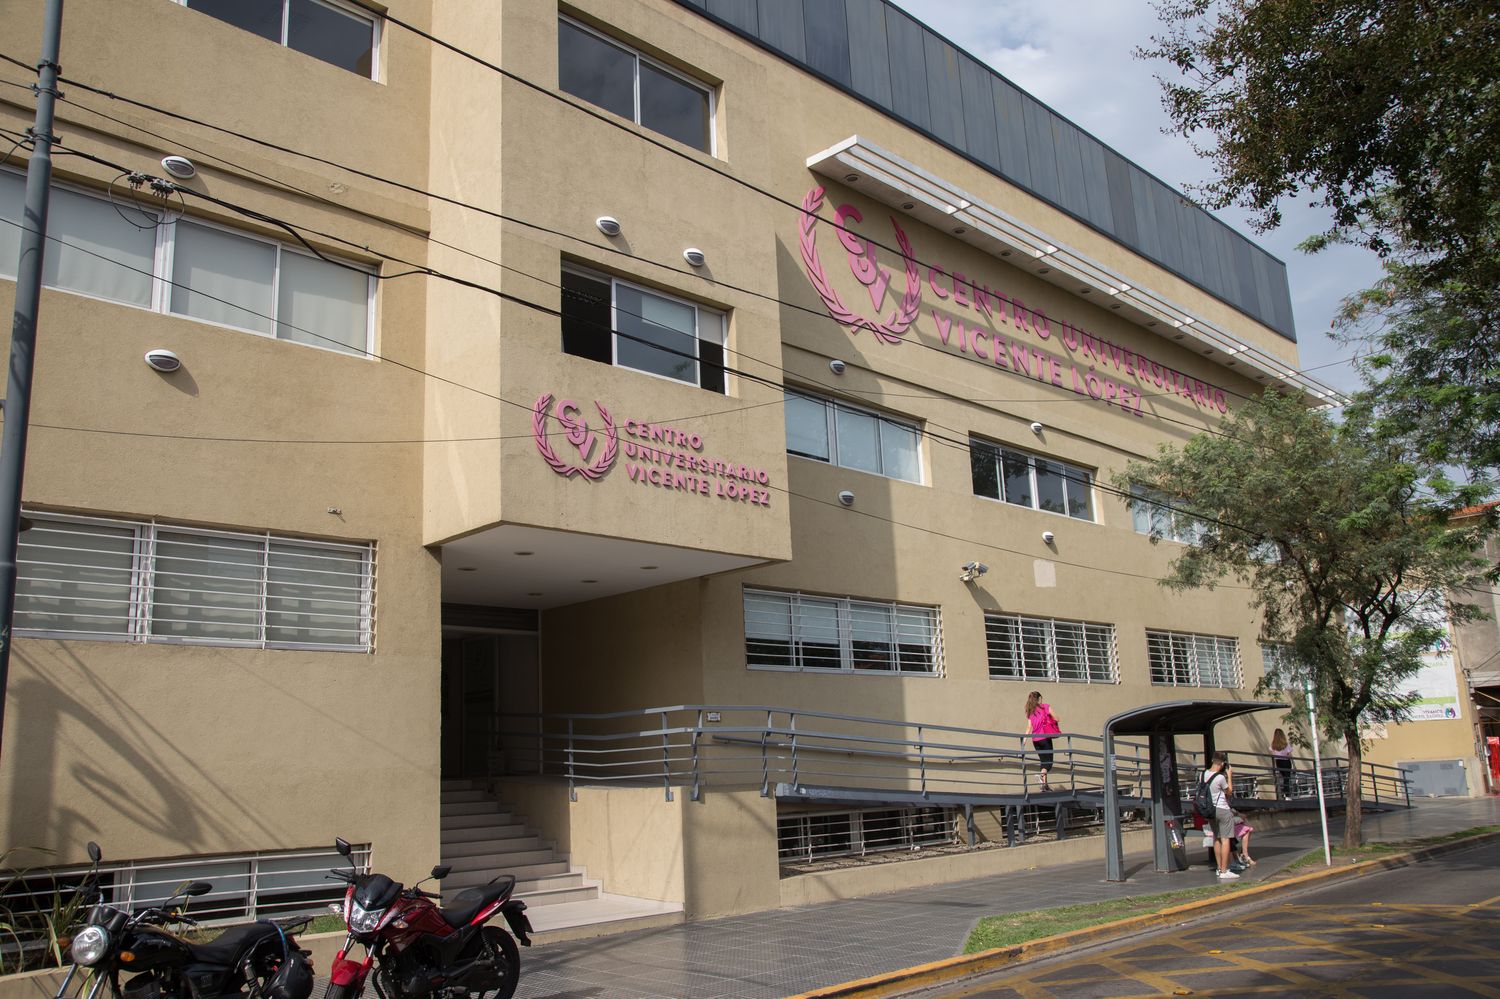 Brindan capacitación gratuita en el Centro Universitario de Vicente López